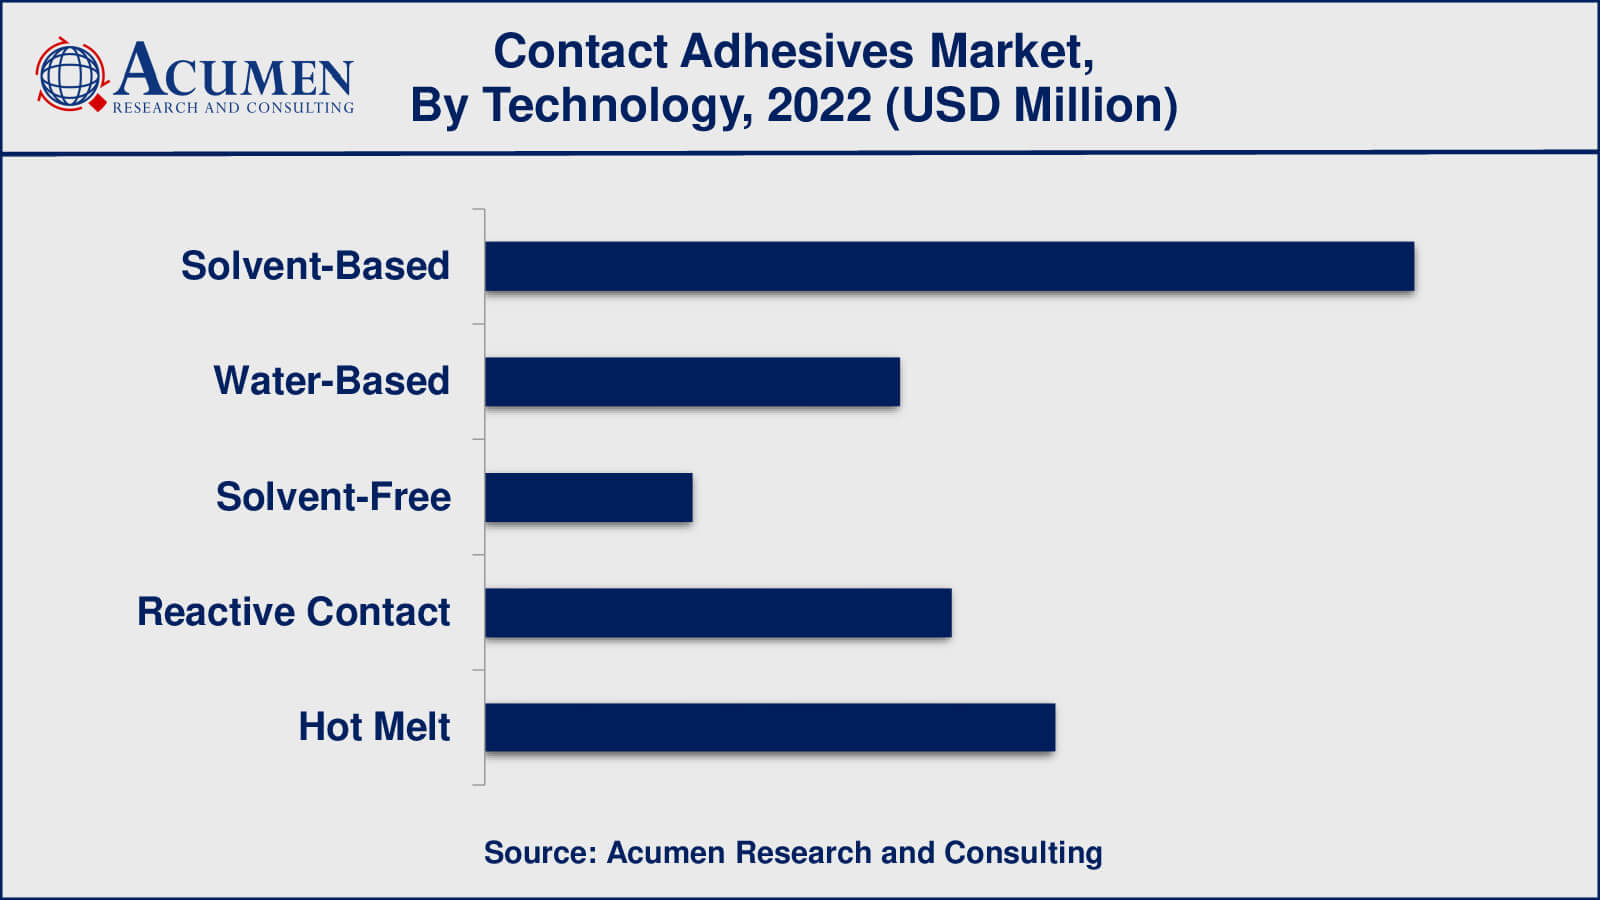 Contact Adhesives Market Analysis